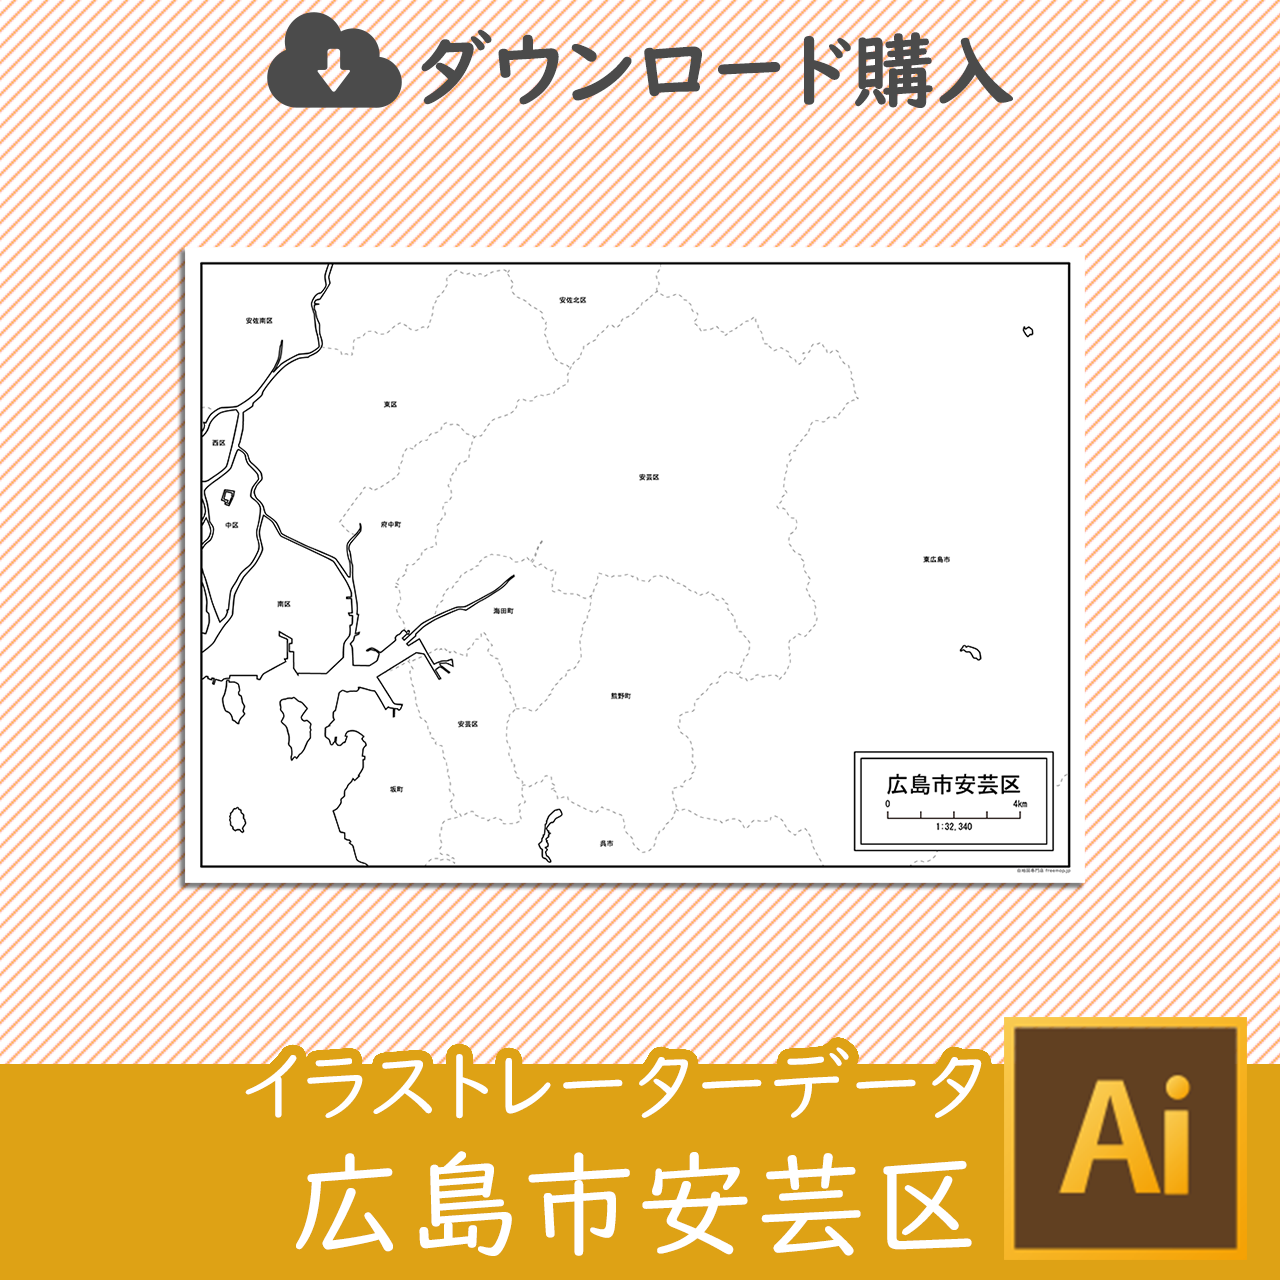 広島市安芸区の白地図のサムネイル